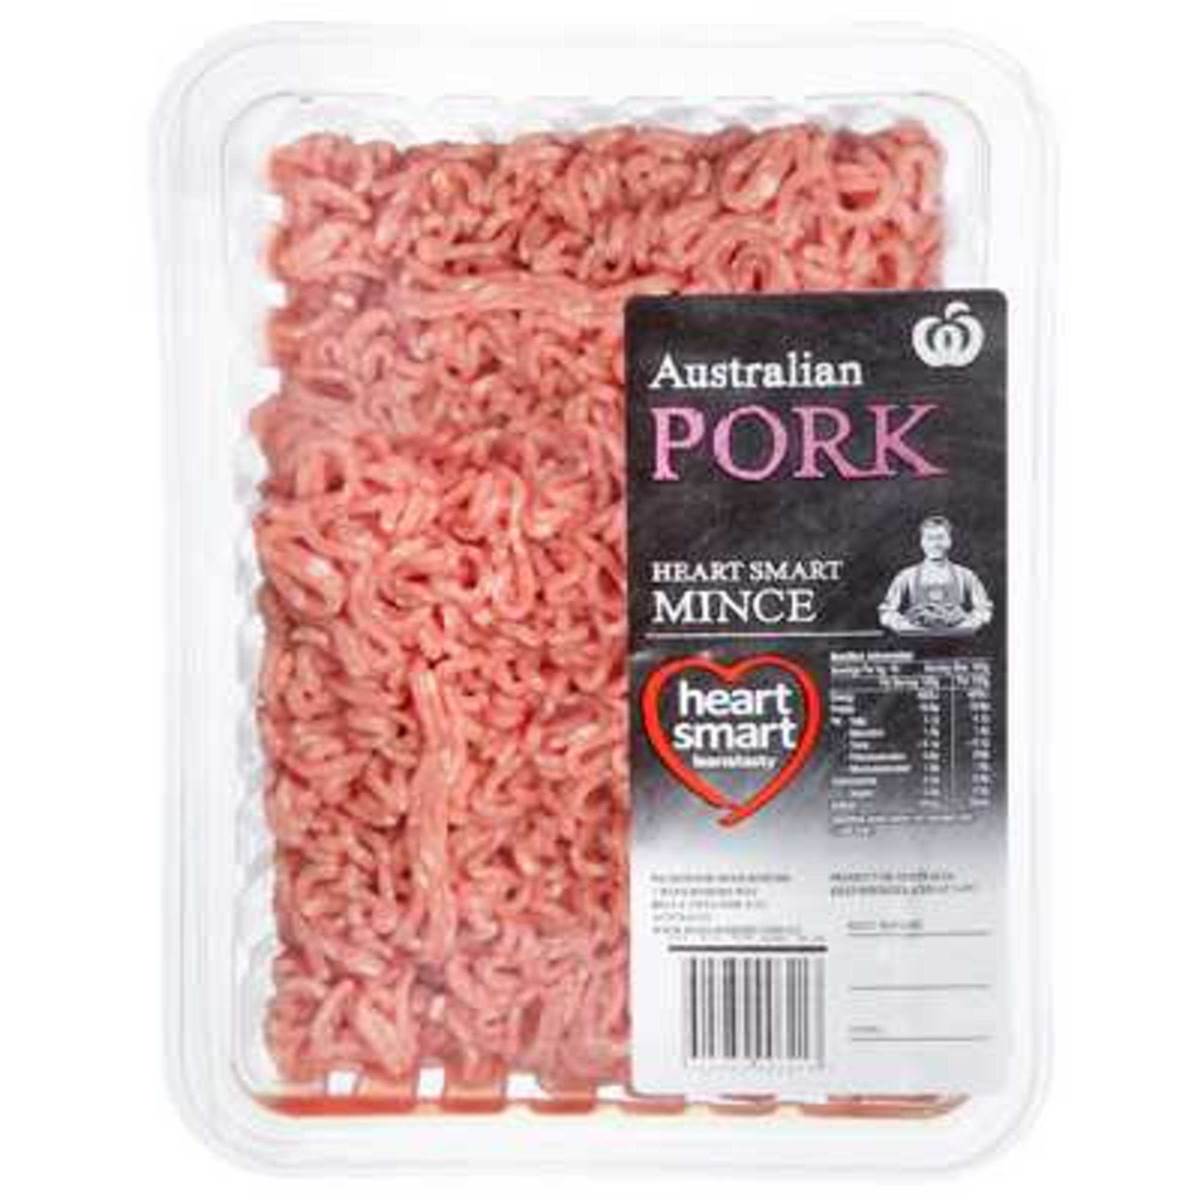 Australian Pork Mince Heart Smart